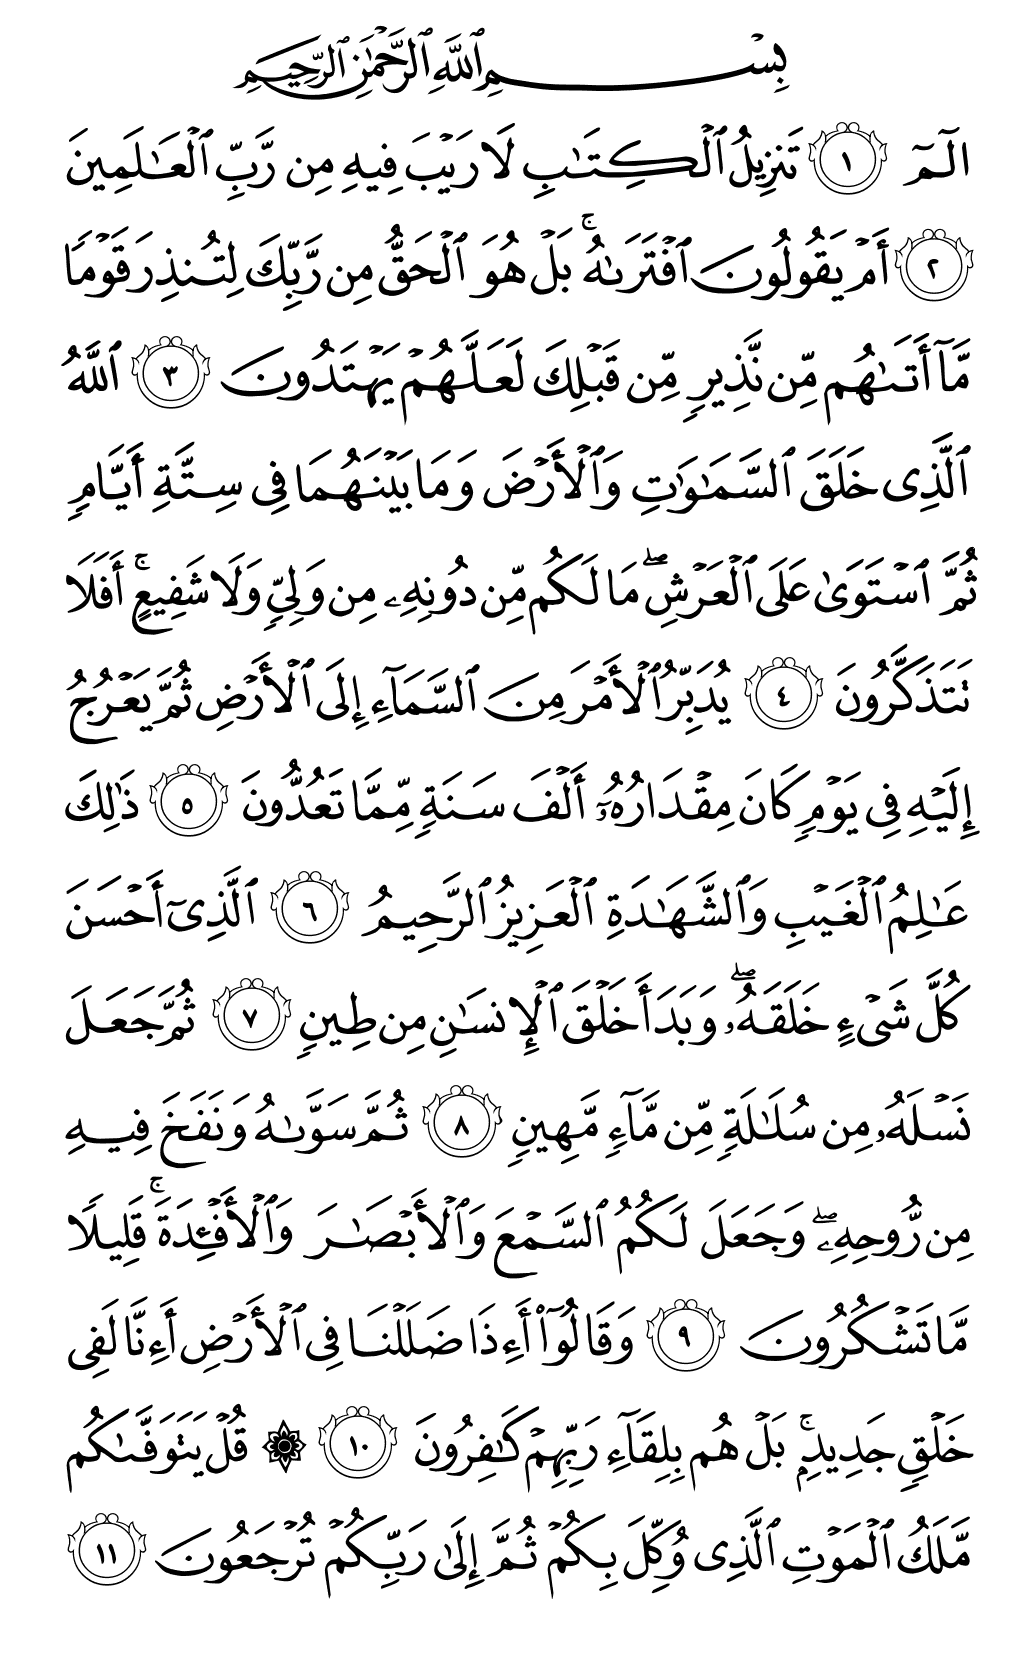 الصفحة رقم 415 من القرآن الكريم